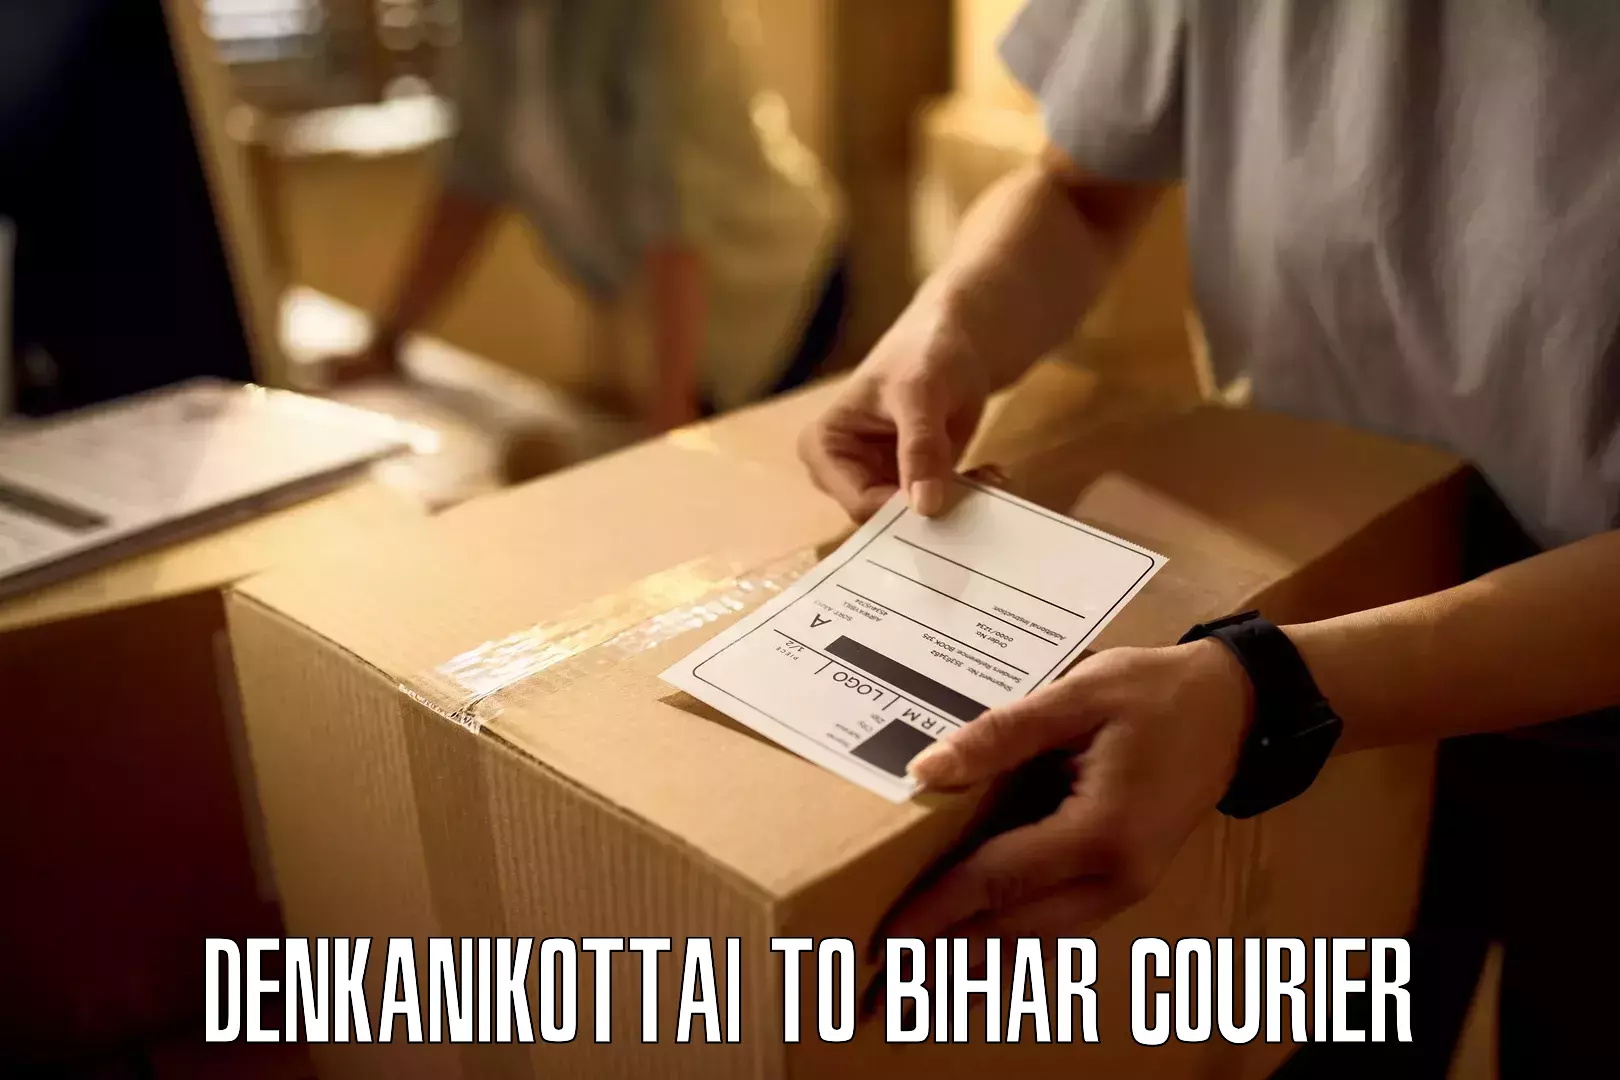 Global freight services Denkanikottai to Bihar